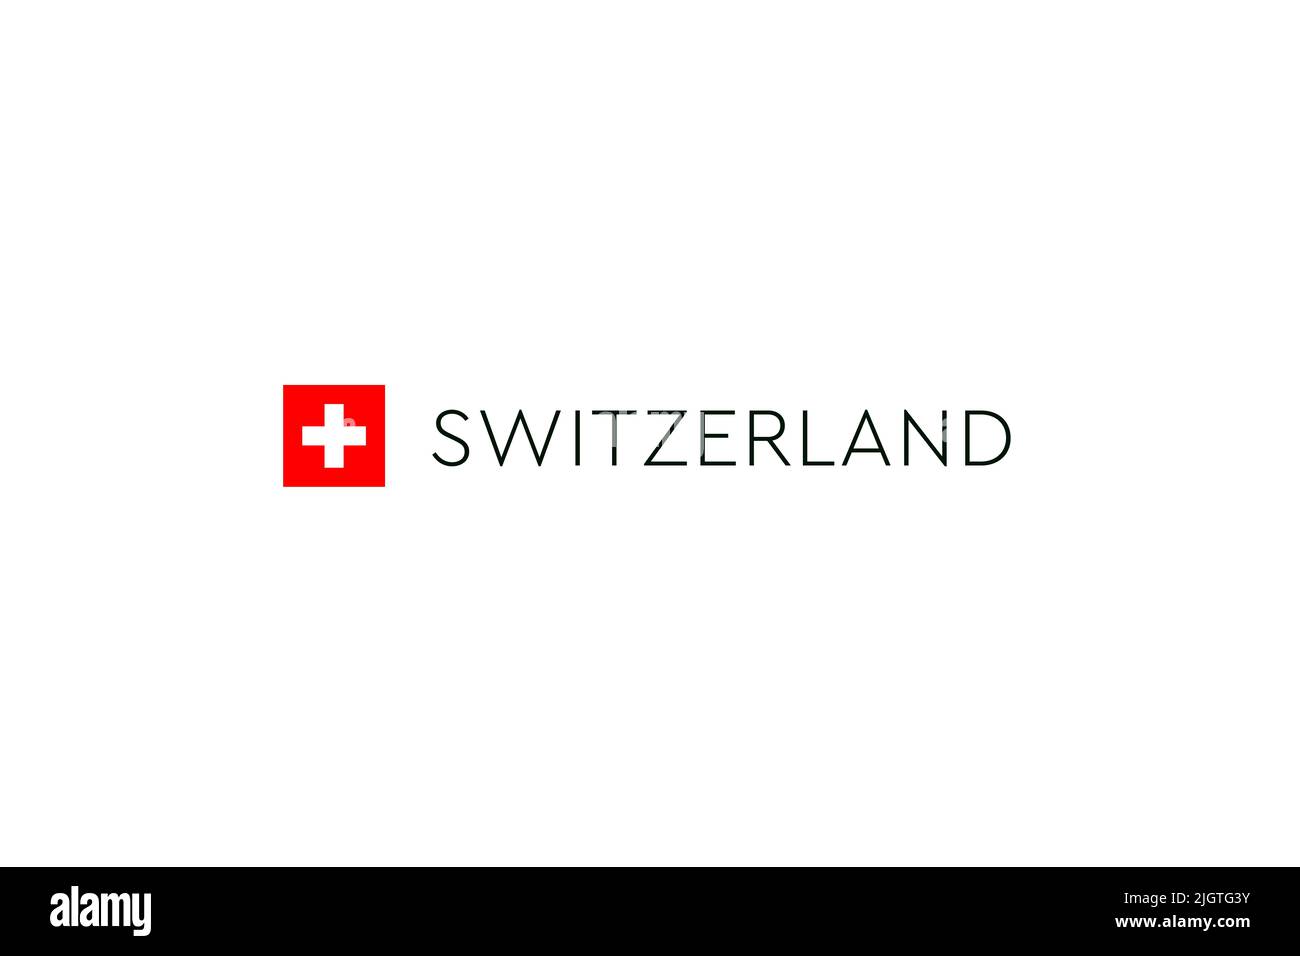 Nationalfeiertag der Schweiz. Gründung der Schweizerischen Eidgenossenschaft am 1.. August. Hintergrund der Schweizer Flagge. Stockfoto